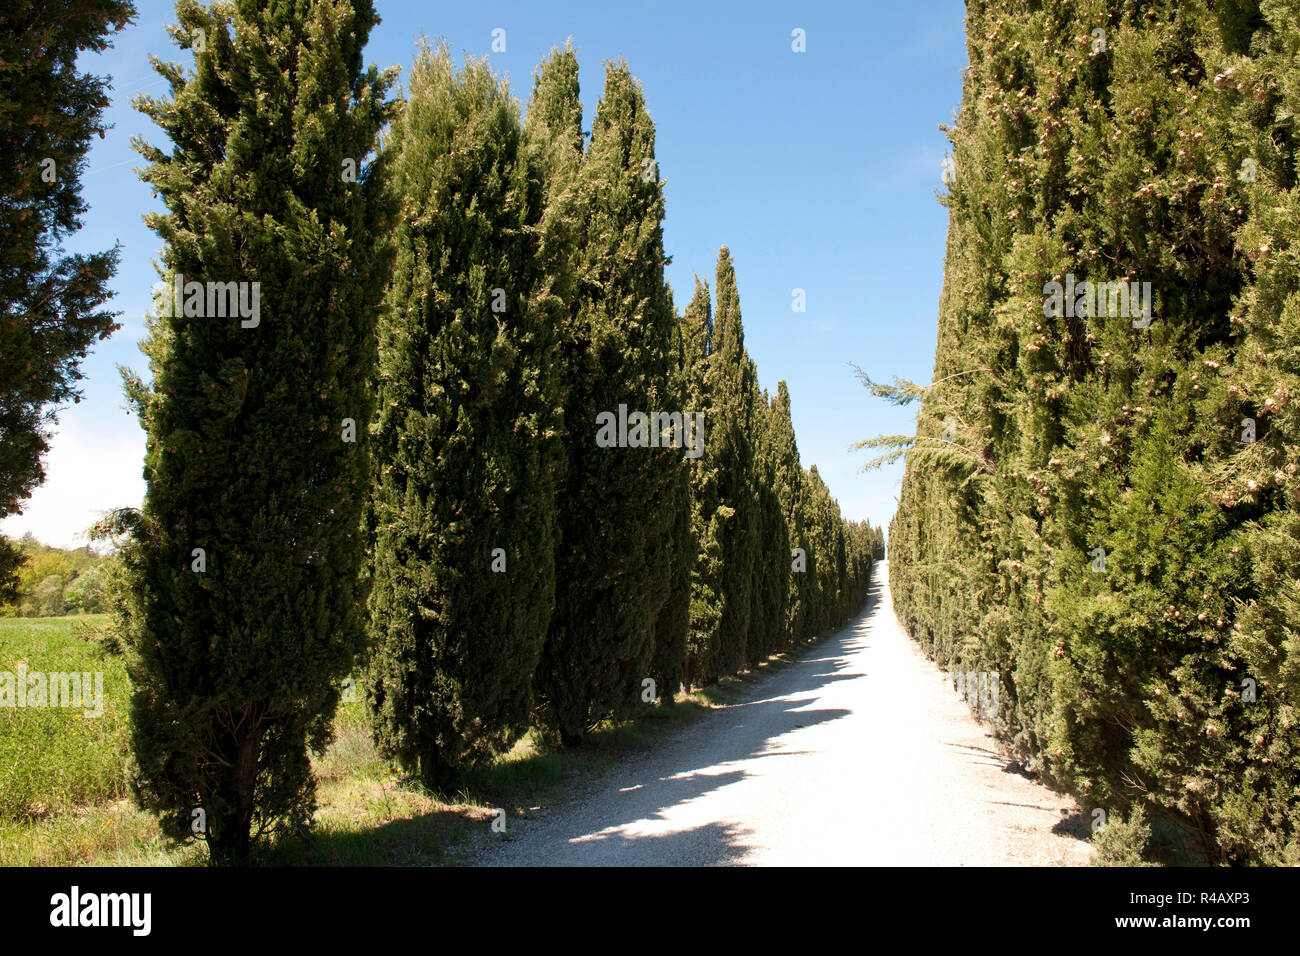 Avenue de cyprès, cyprès, Toscane, Italie, Europe, (Cupressus sempervirens) Banque D'Images